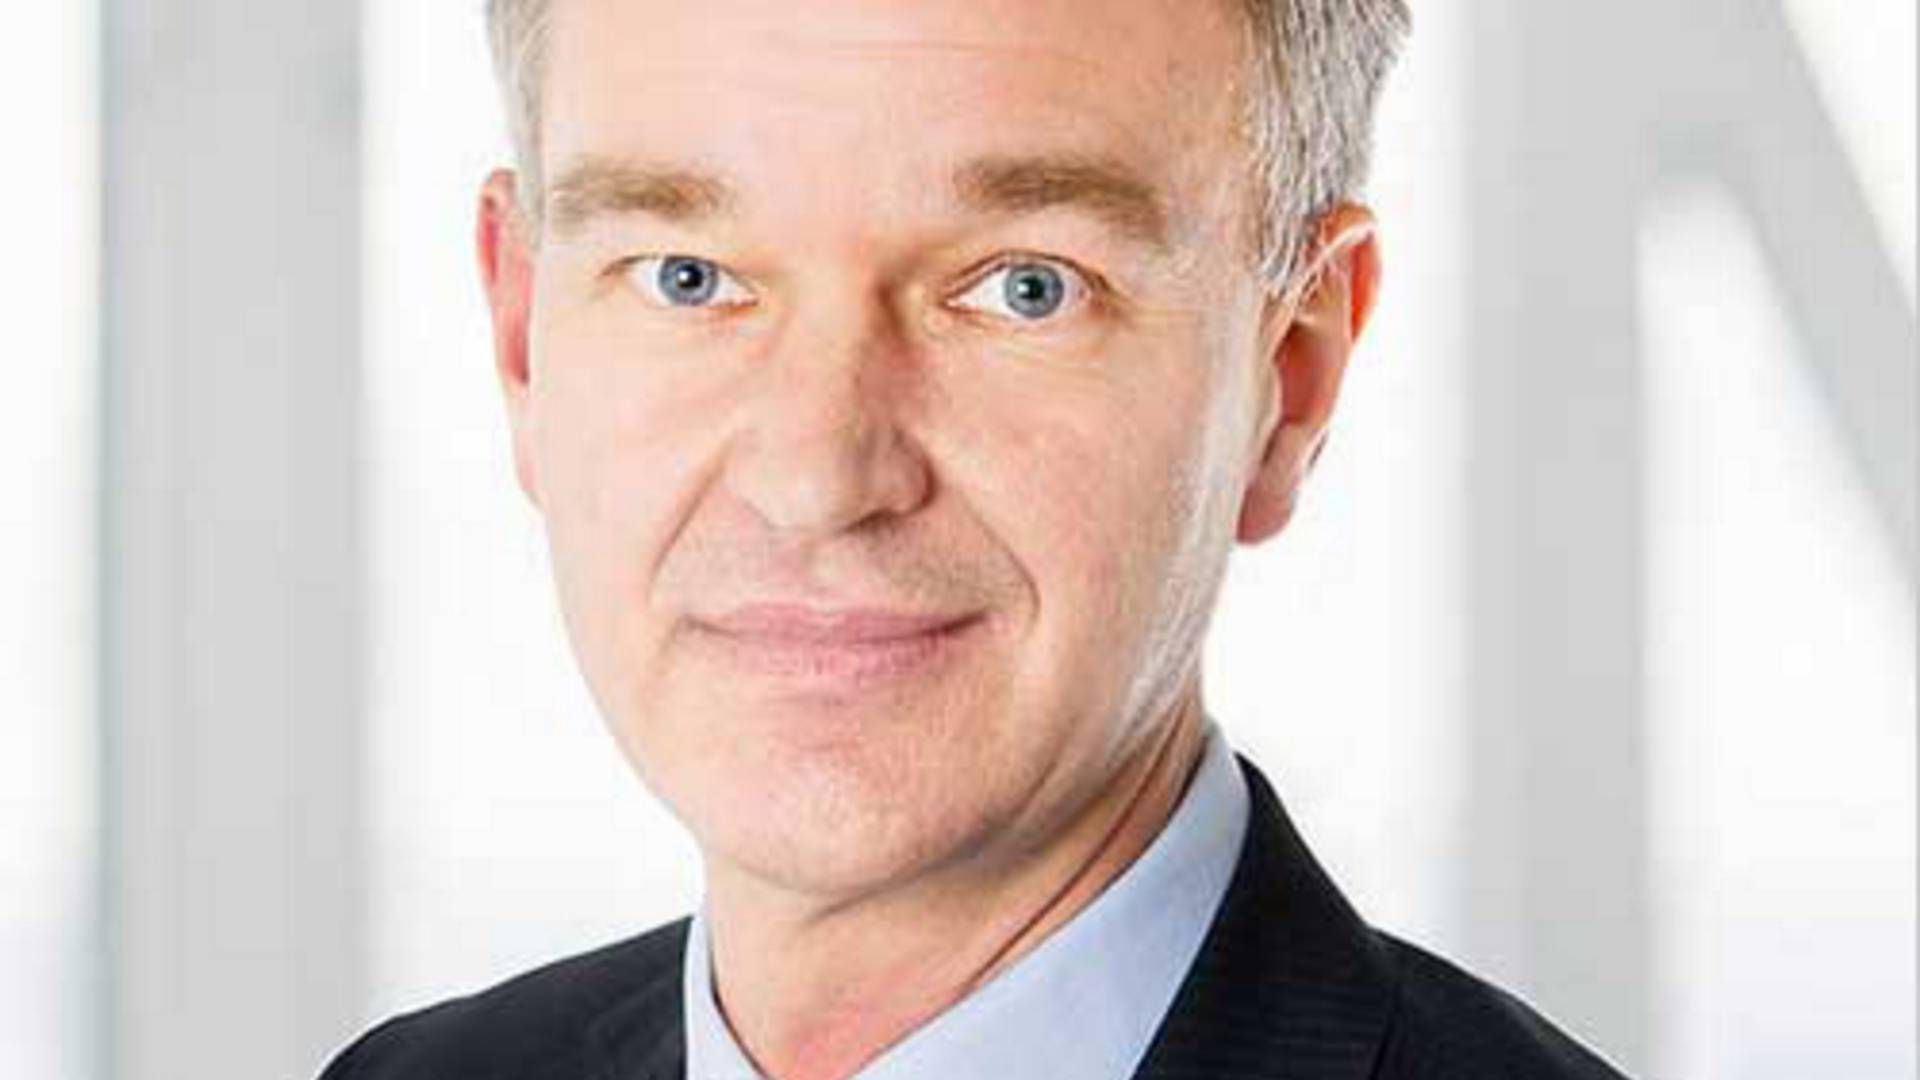 Finansdirektør i Bavarian, Henrik Juuel, oplyser, at statens afkast i bedste fald bliver på lånerenteniveau. | Foto: PR / Bavarian Nordic